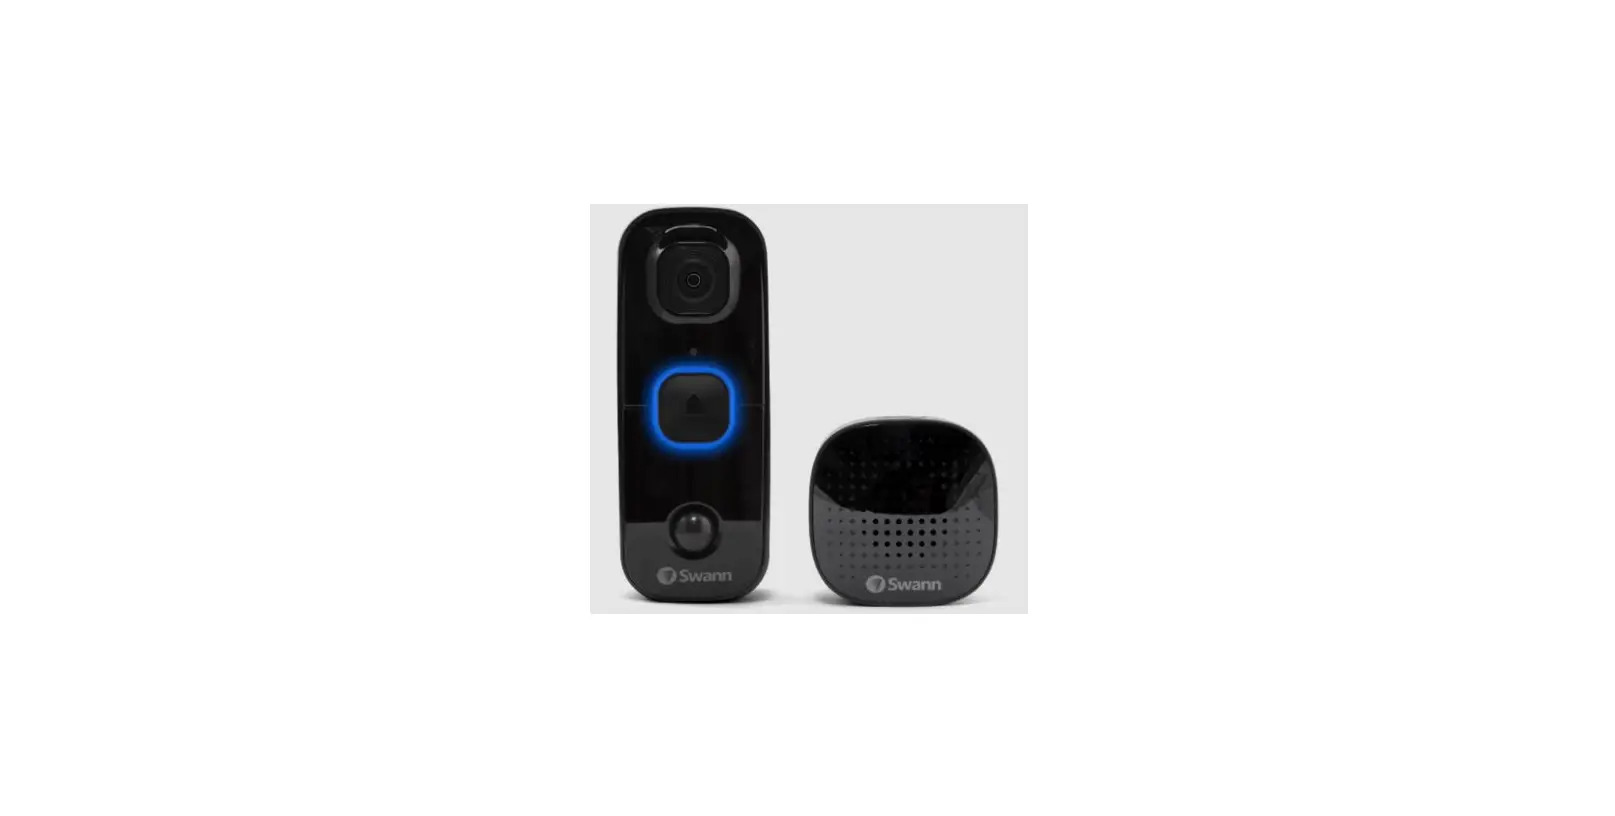 uddy QC9116 Video Doorbell